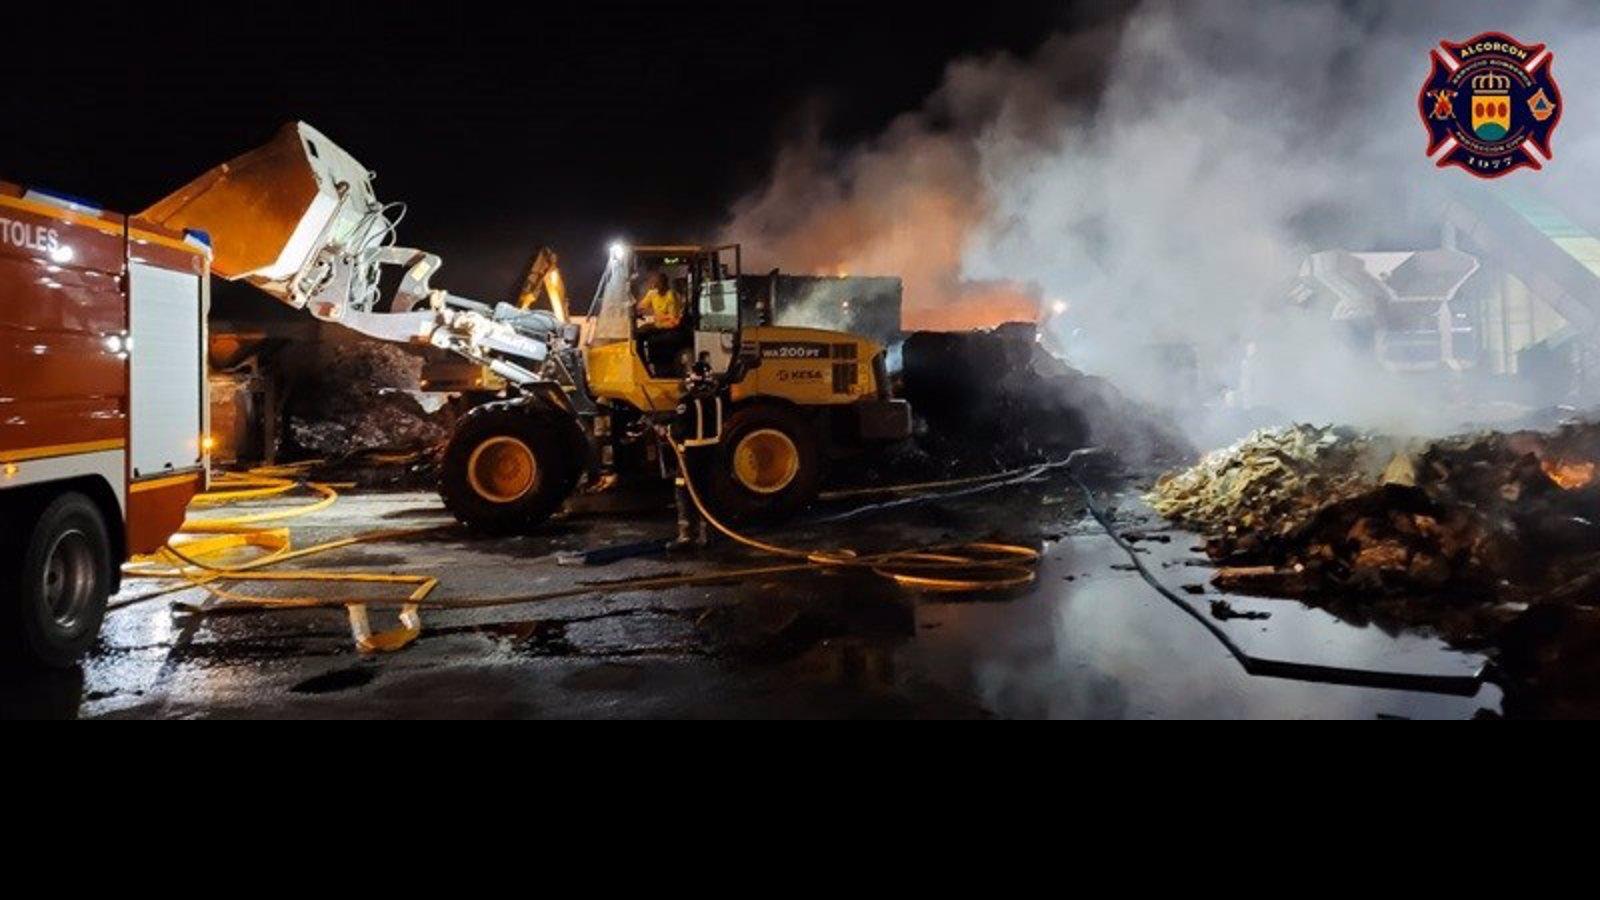  Extinguido sin heridos un fuego en una empresa de recuperación y reciclaje de Alcorcón